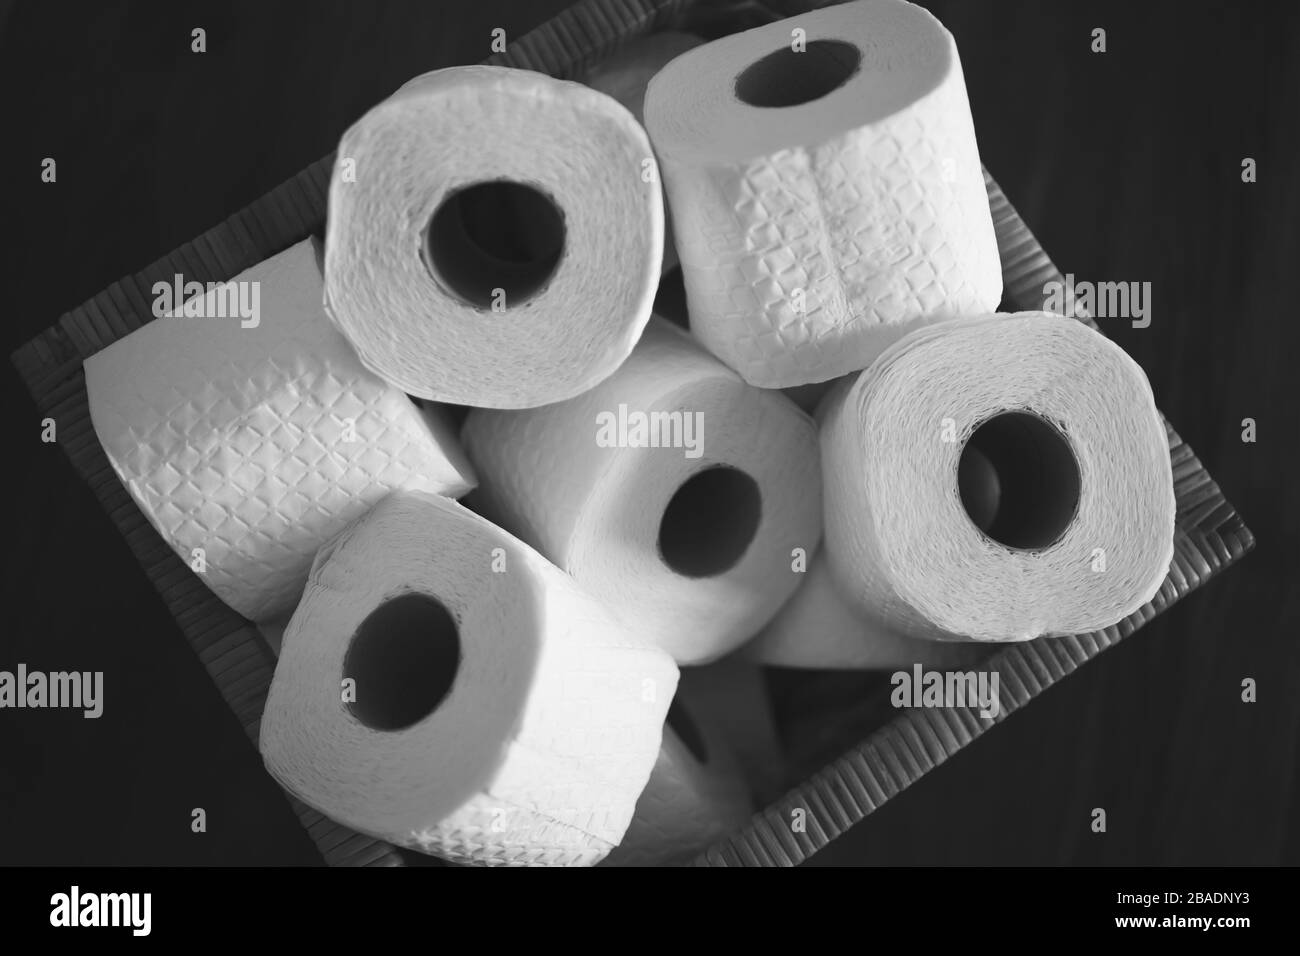 Diversi Rotoli Di Carta Igienica In Una Scatola In Bianco E Nero Foto Stock Alamy